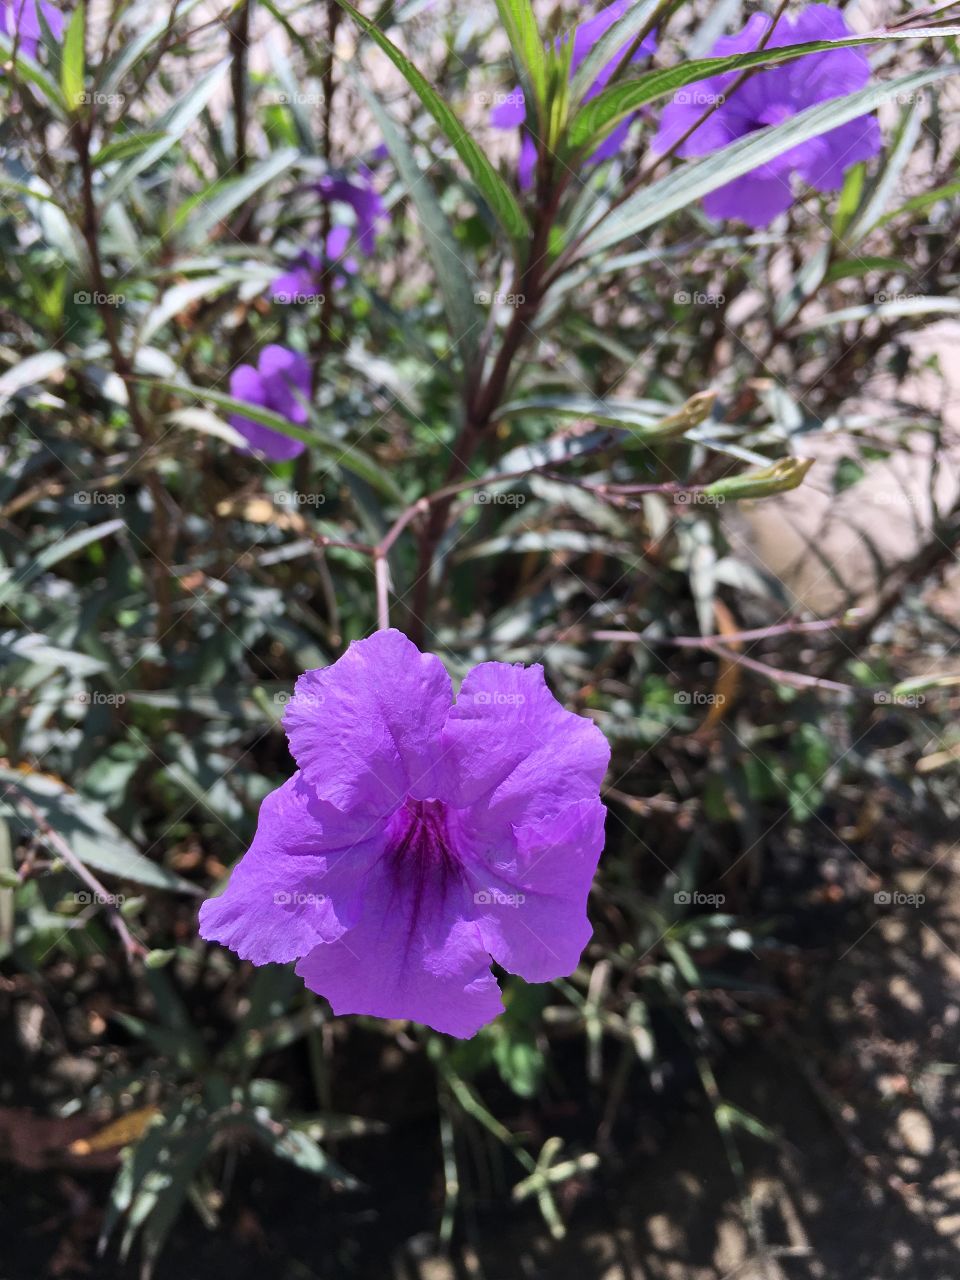 Flower so purple